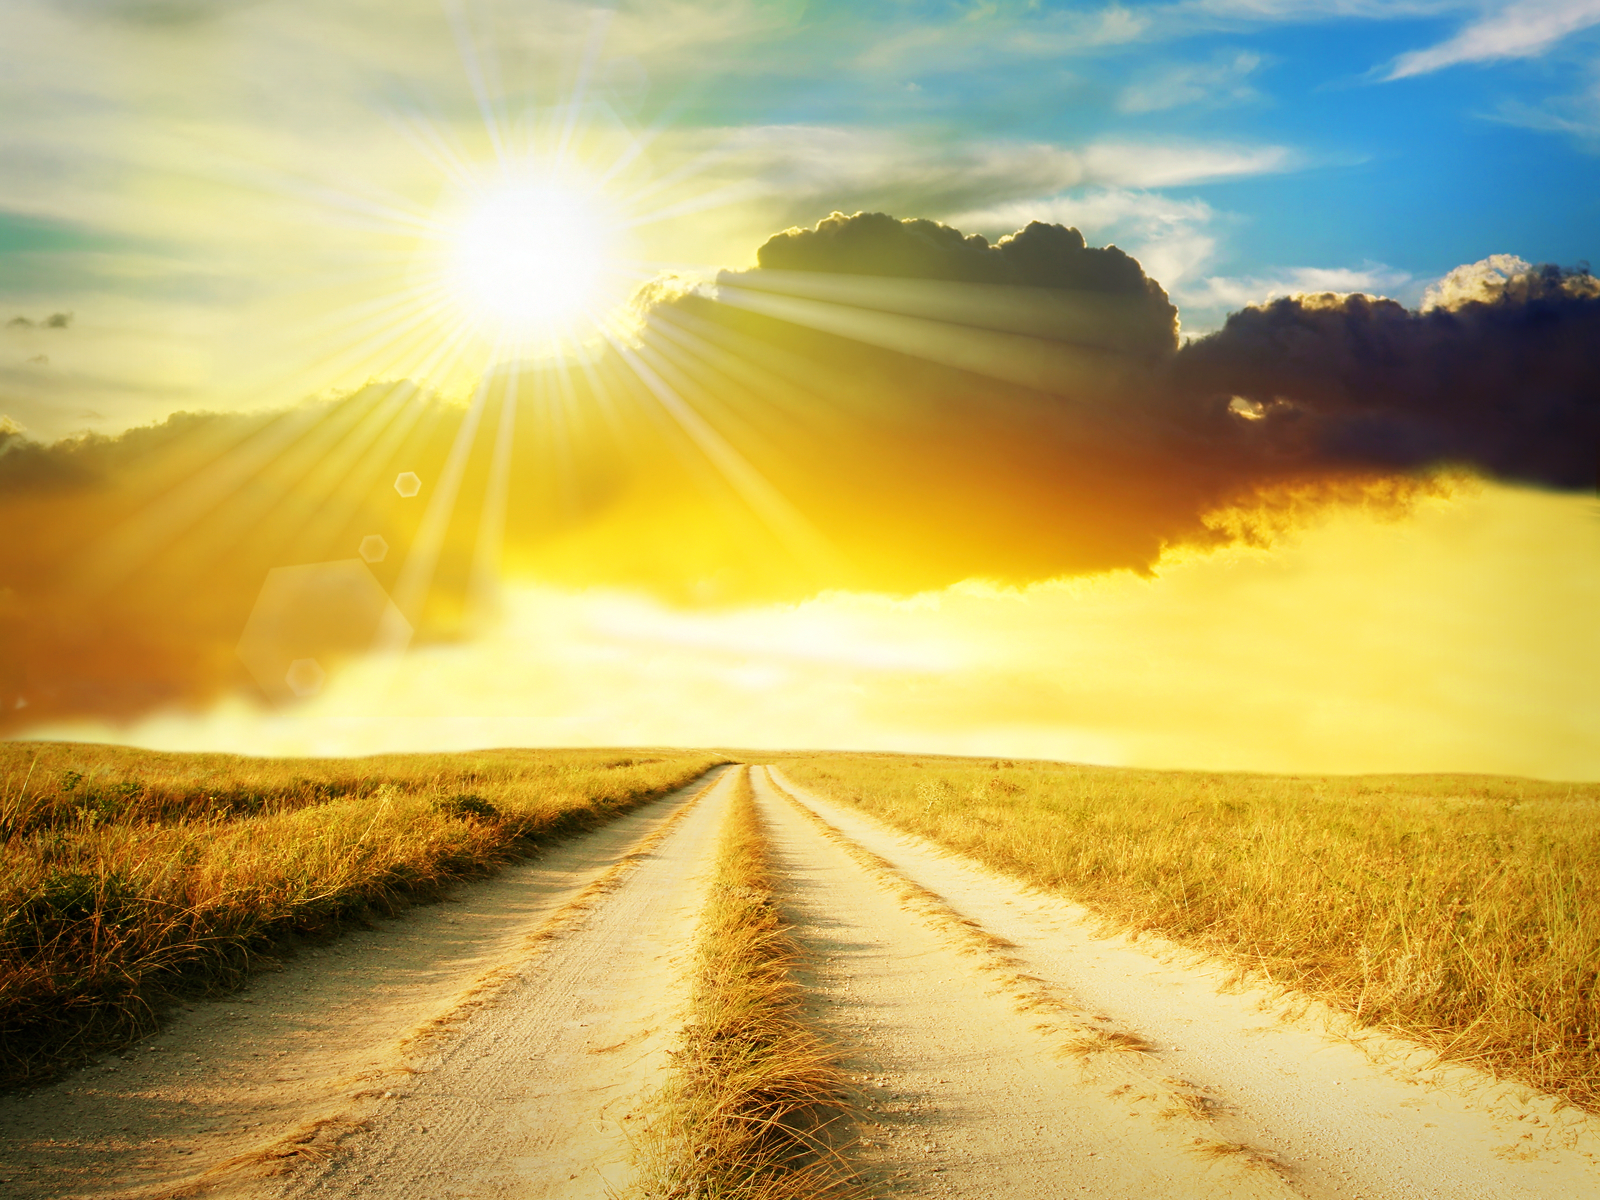 Небеса так чисты освещают нам дорогу. Солнце на дороге. Солнечная дорога. Светлая дорога. Счастливая дорога.